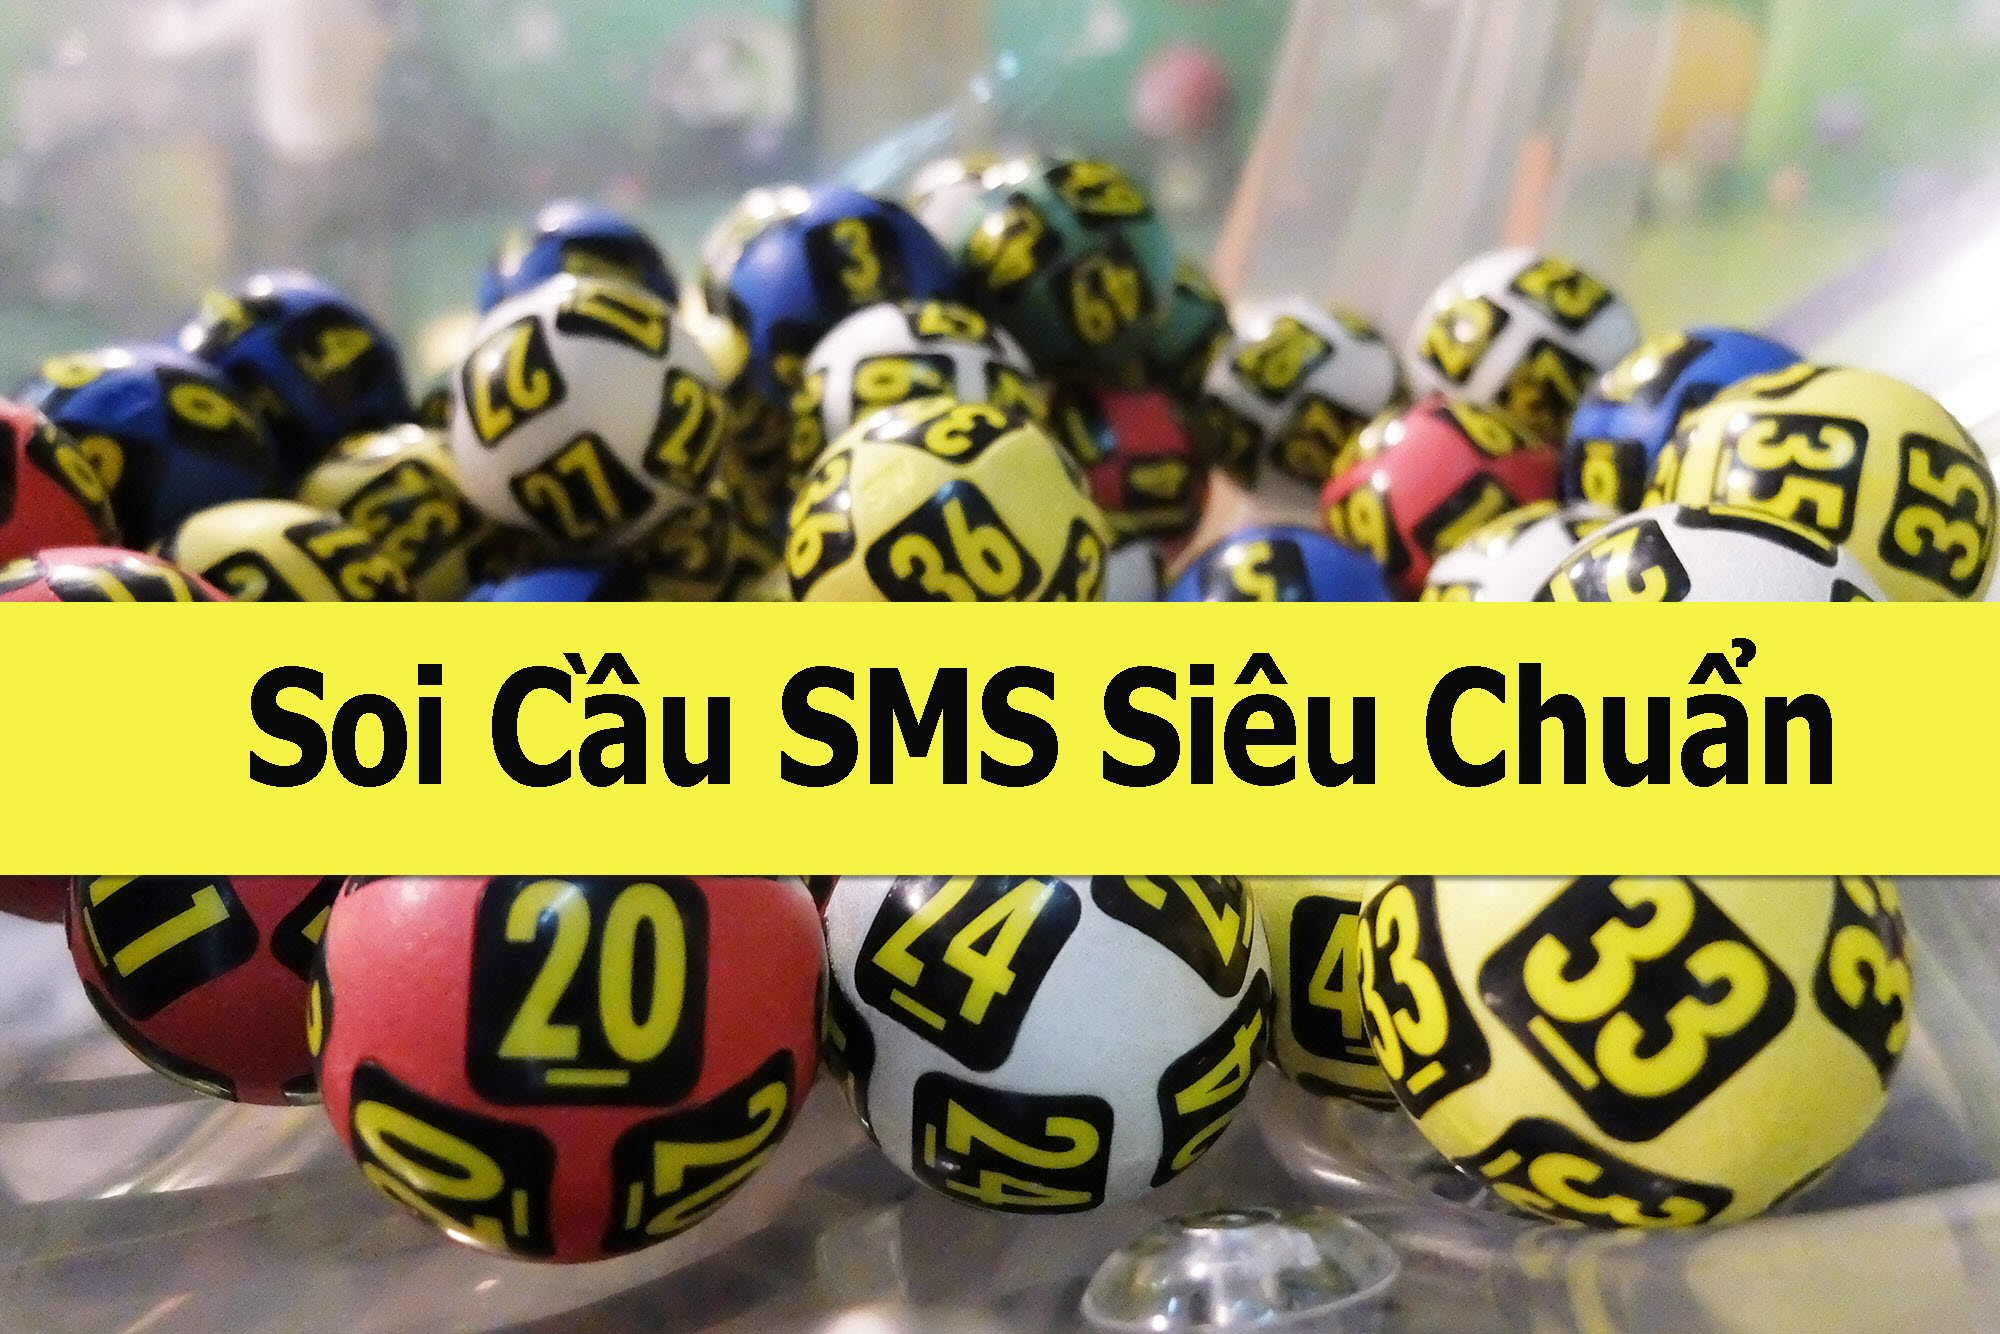 Read more about the article Chia sẻ phương pháp soi cầu sms siêu chuẩn xác